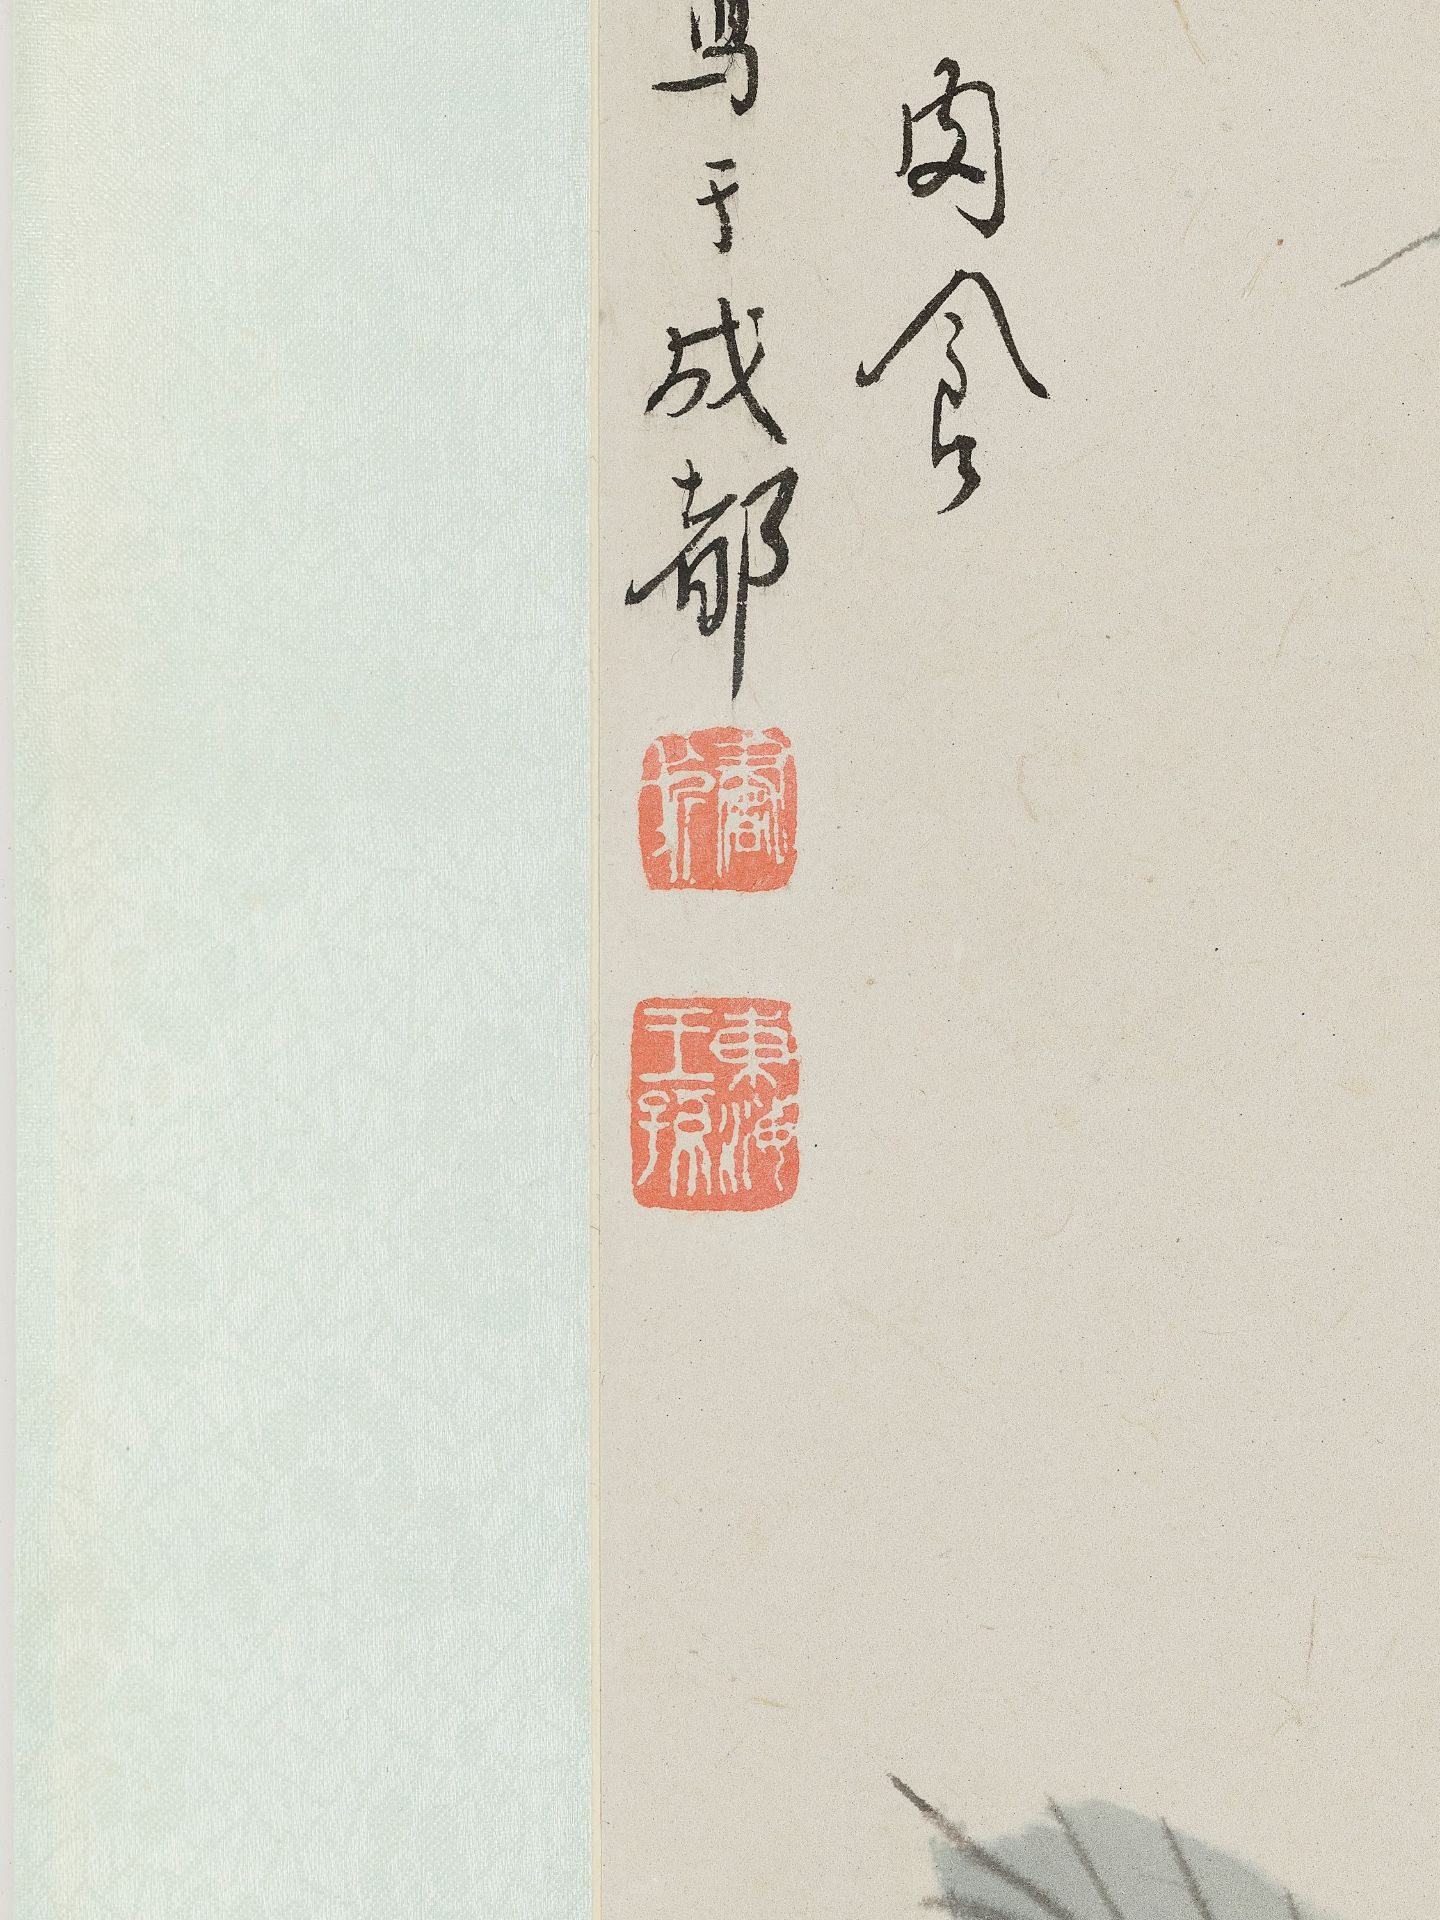 TWO PIGS', BY XU BEIHONG (1895-1953) AND ZHANG SHUQI (1899-1956), DATED 1937 - Image 10 of 12